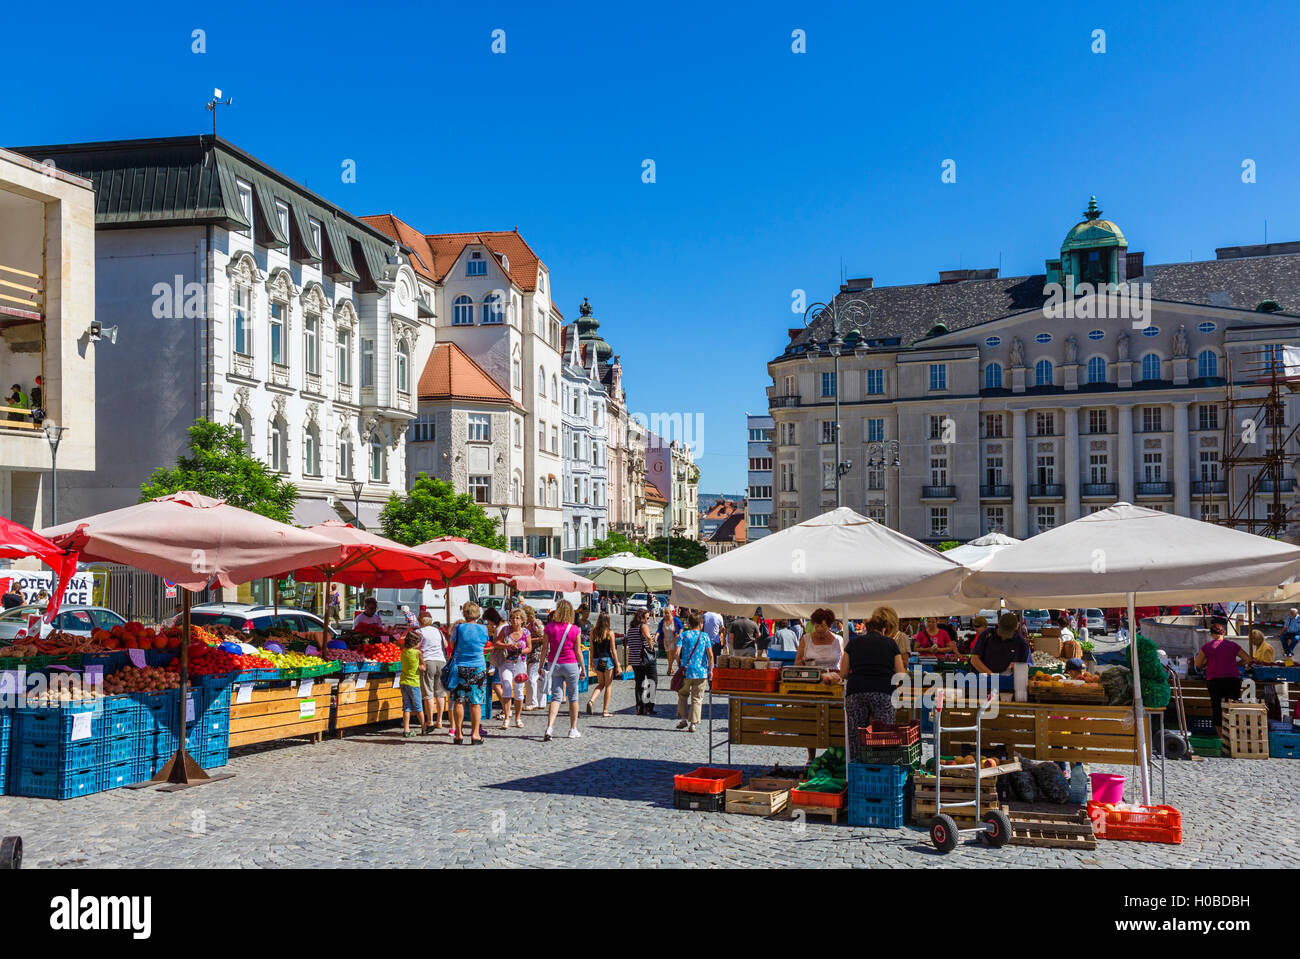 Brno, Repubblica Ceca. Zelný trh (mercato ortofrutticolo o cavolo mercato), una piazza nel centro della città vecchia, Brno, Moravia Repubblica Ceca Foto Stock